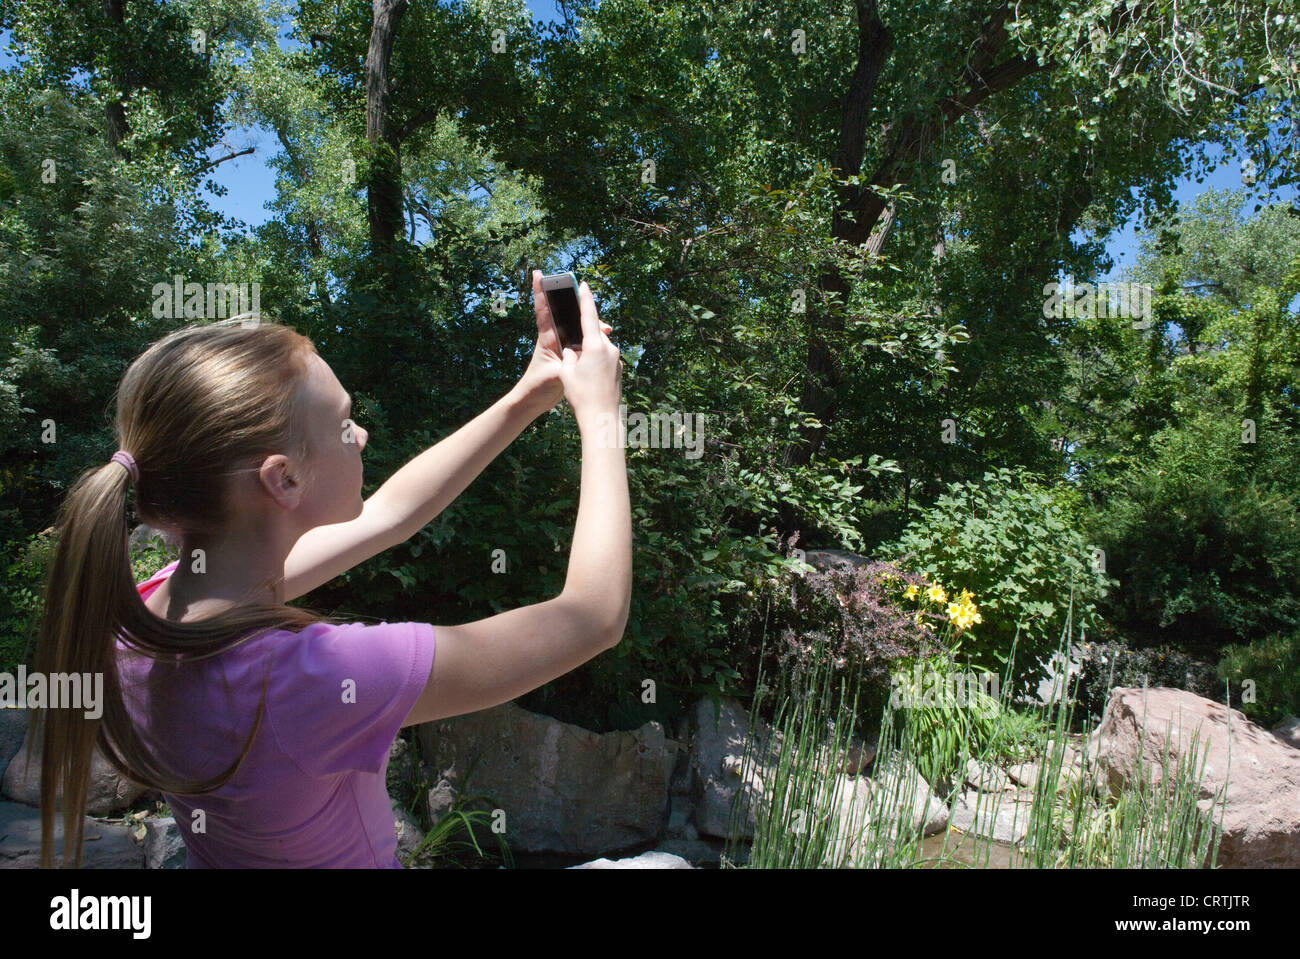 Ein 13 Jahres altes Mädchen nimmt ein Bild im Freien mit ihrer Iphone-Kamera. Stockfoto